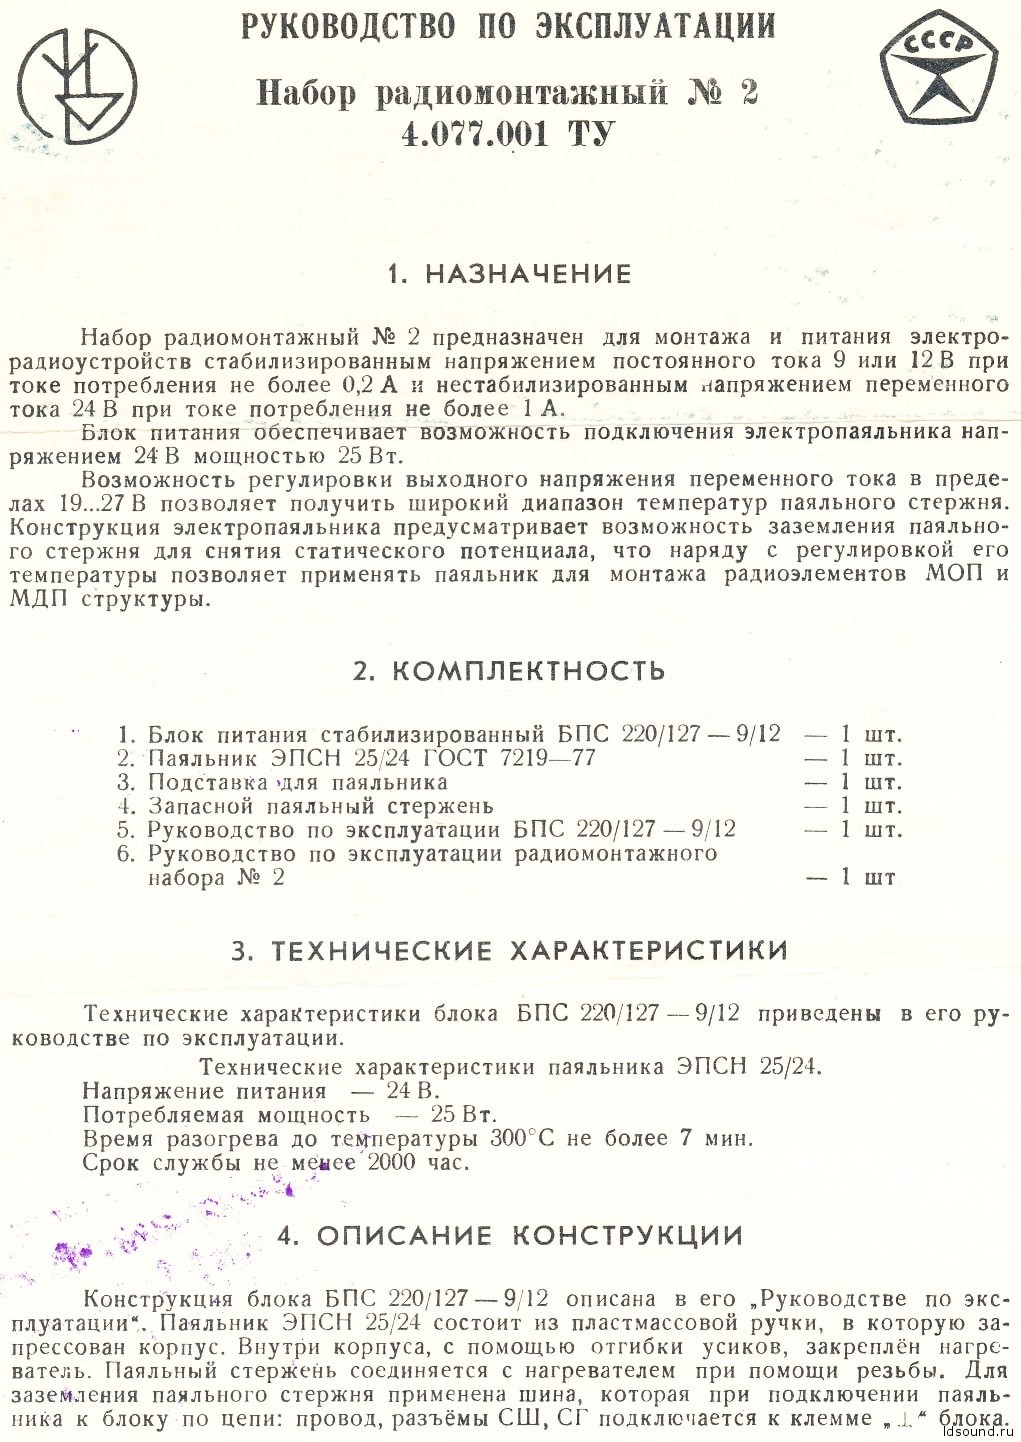 Набор радиомонтажный №2 и БПС 220-9/12